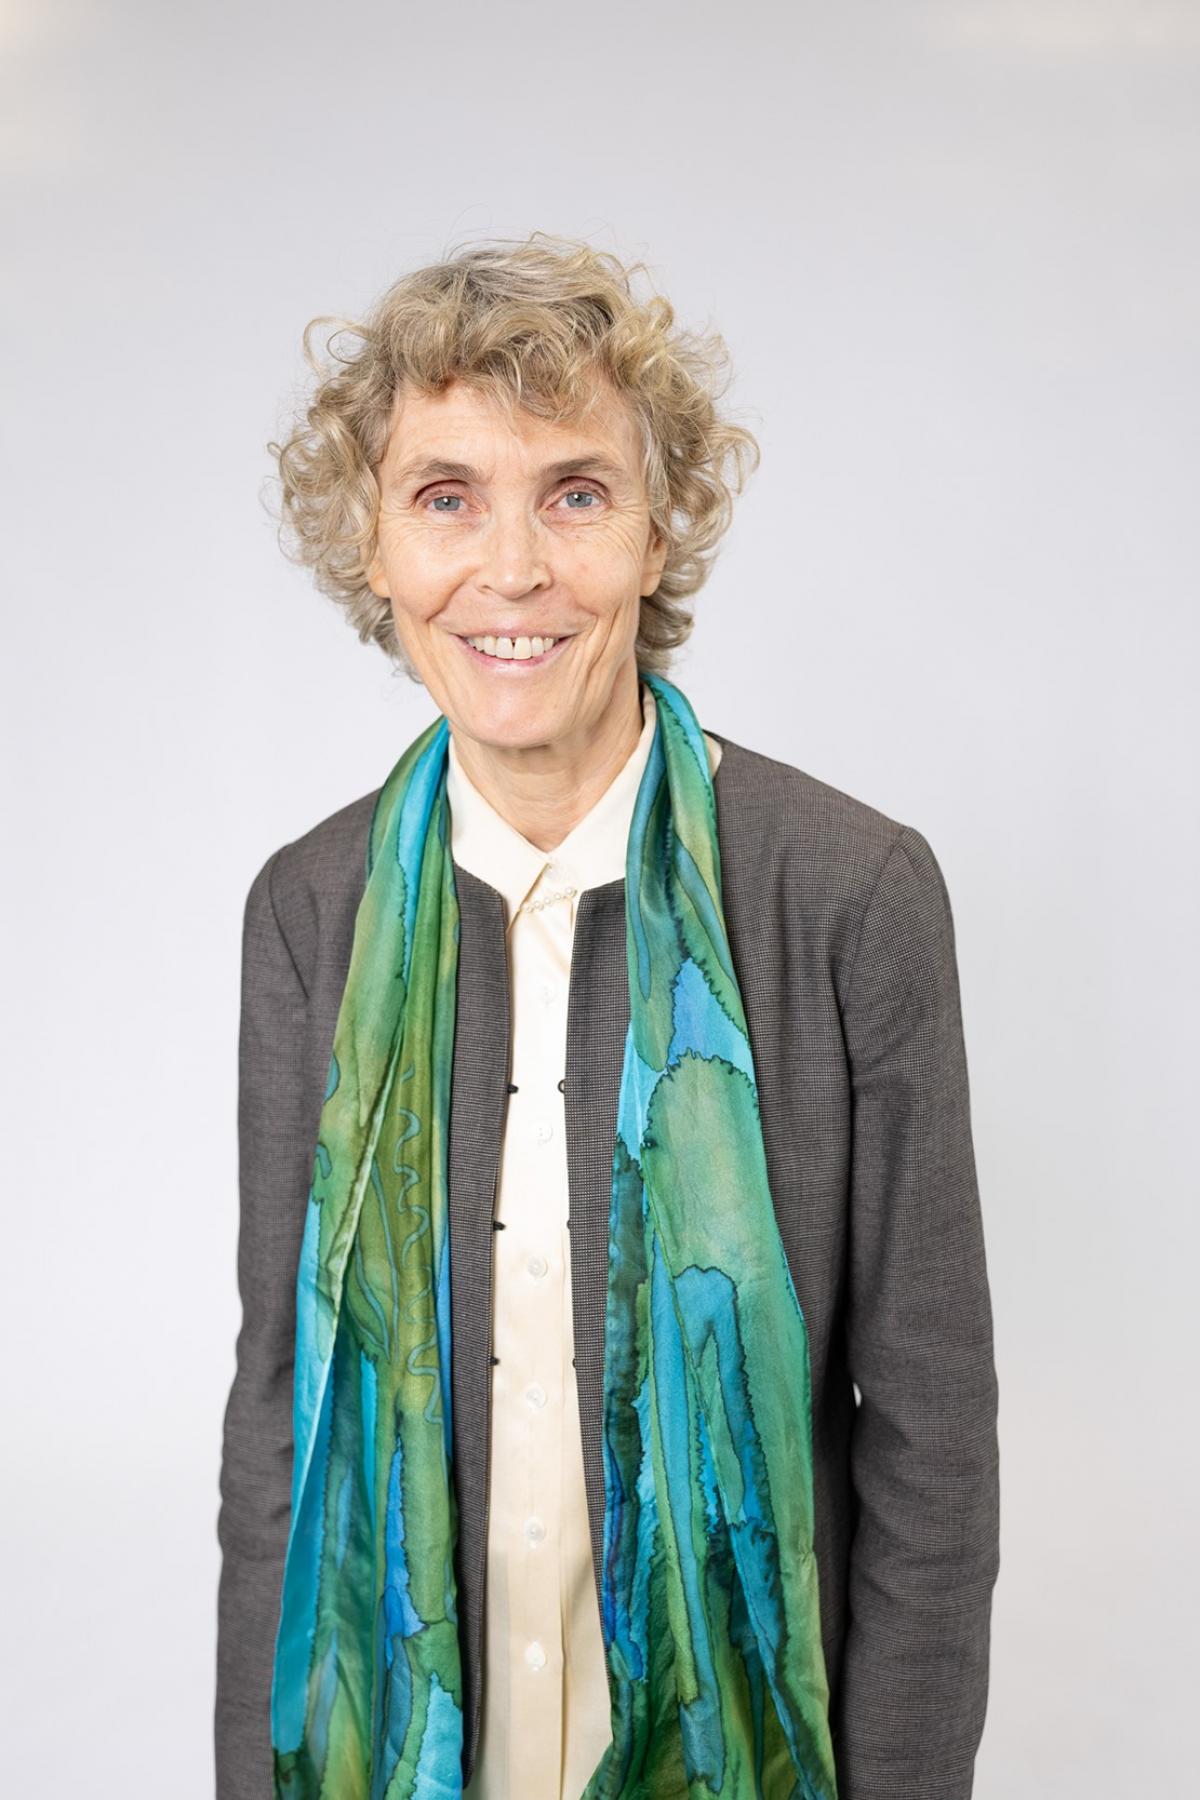 Professor Jane Burry